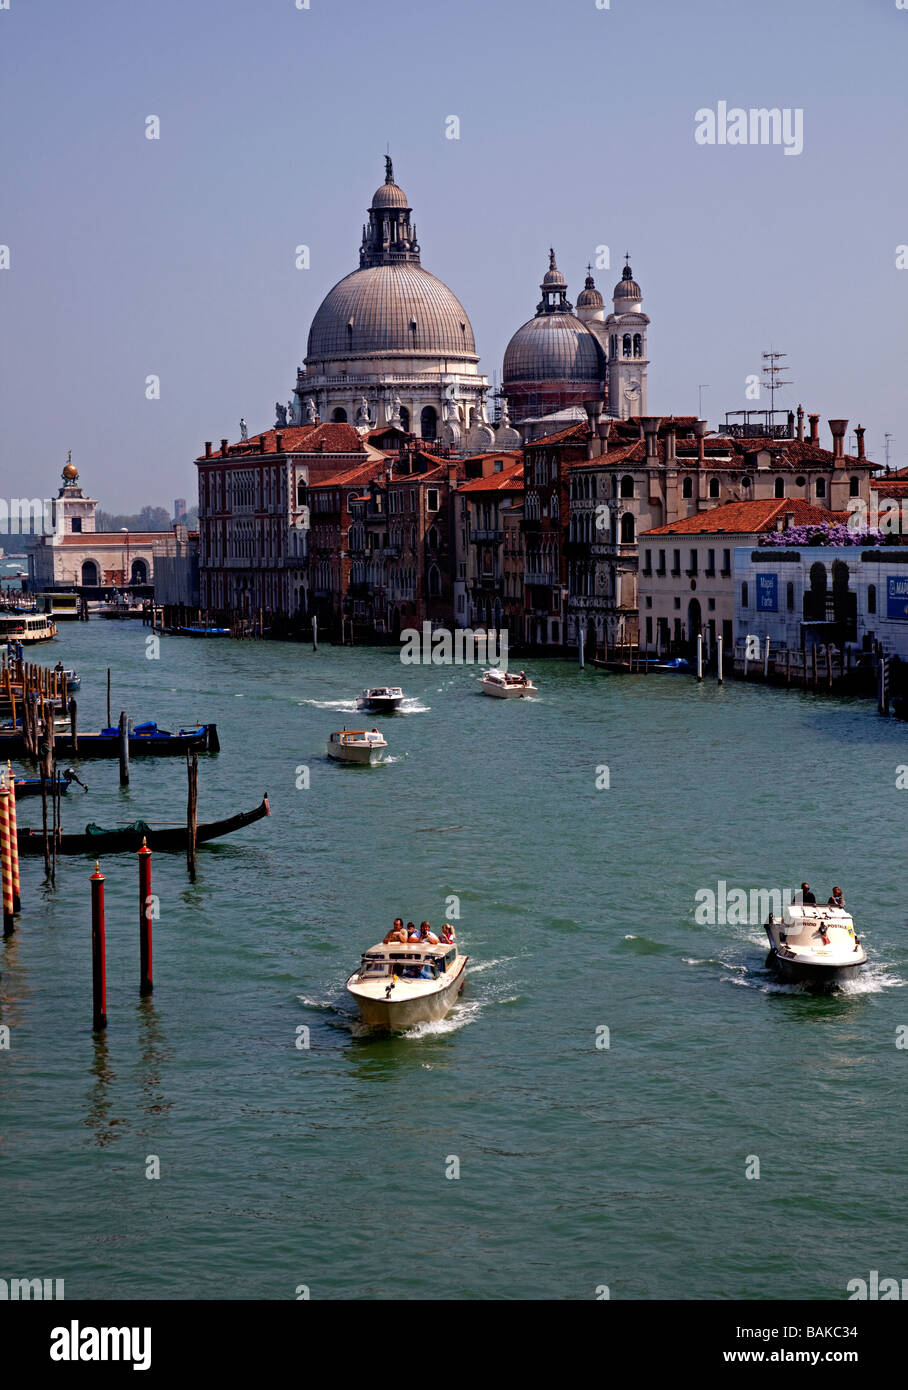 Grand Canal, Santa Maria della Salute, Venice Italy Stock Photo